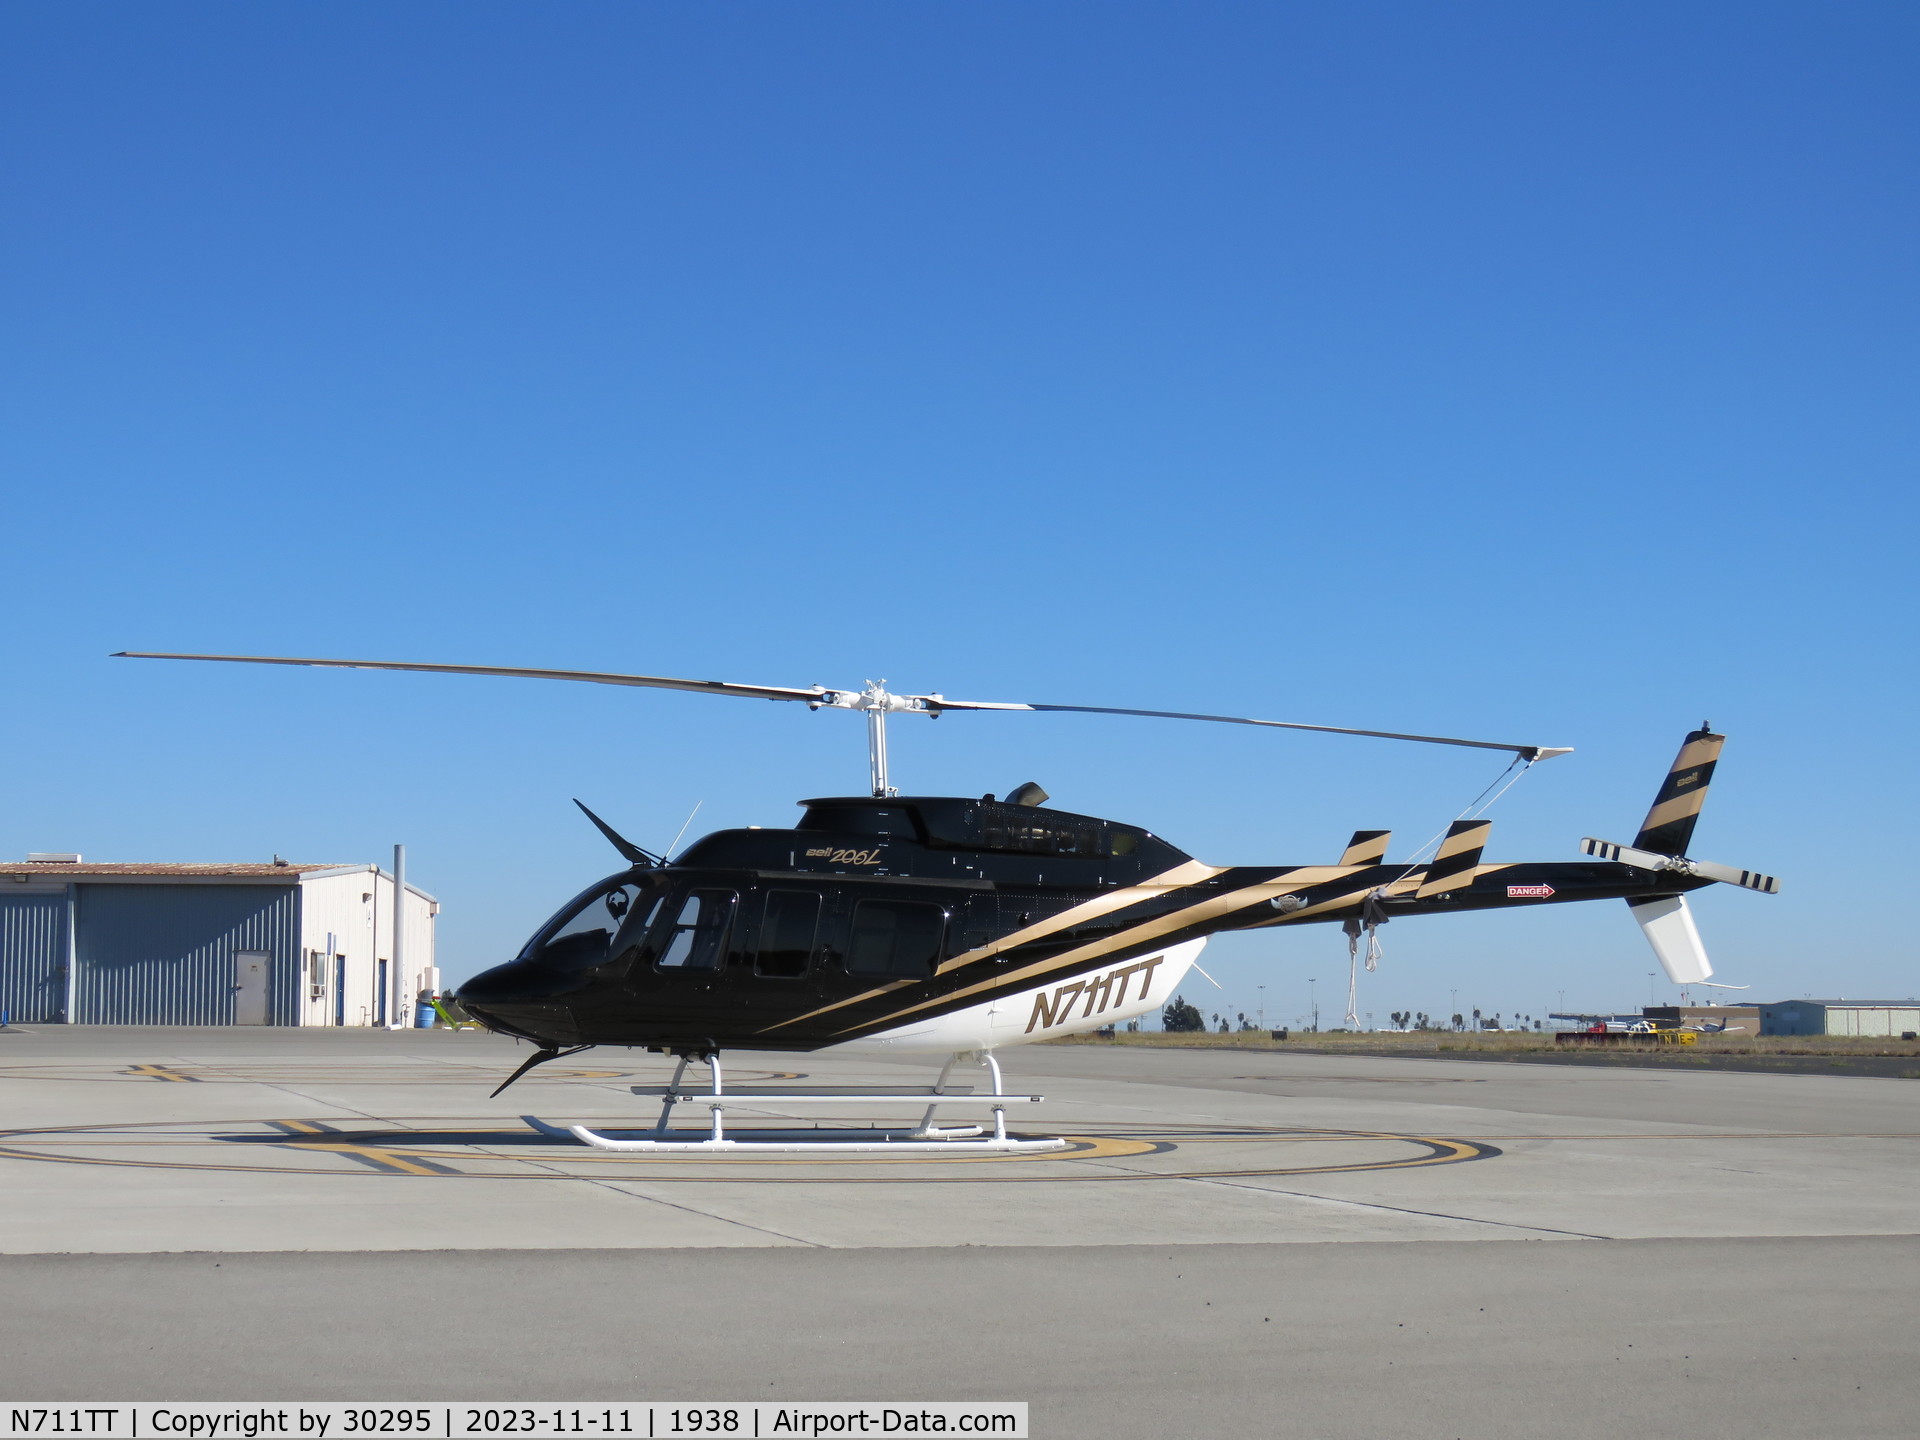 N711TT, 1991 Bell 206L-3 LongRanger III C/N 51433, Parked